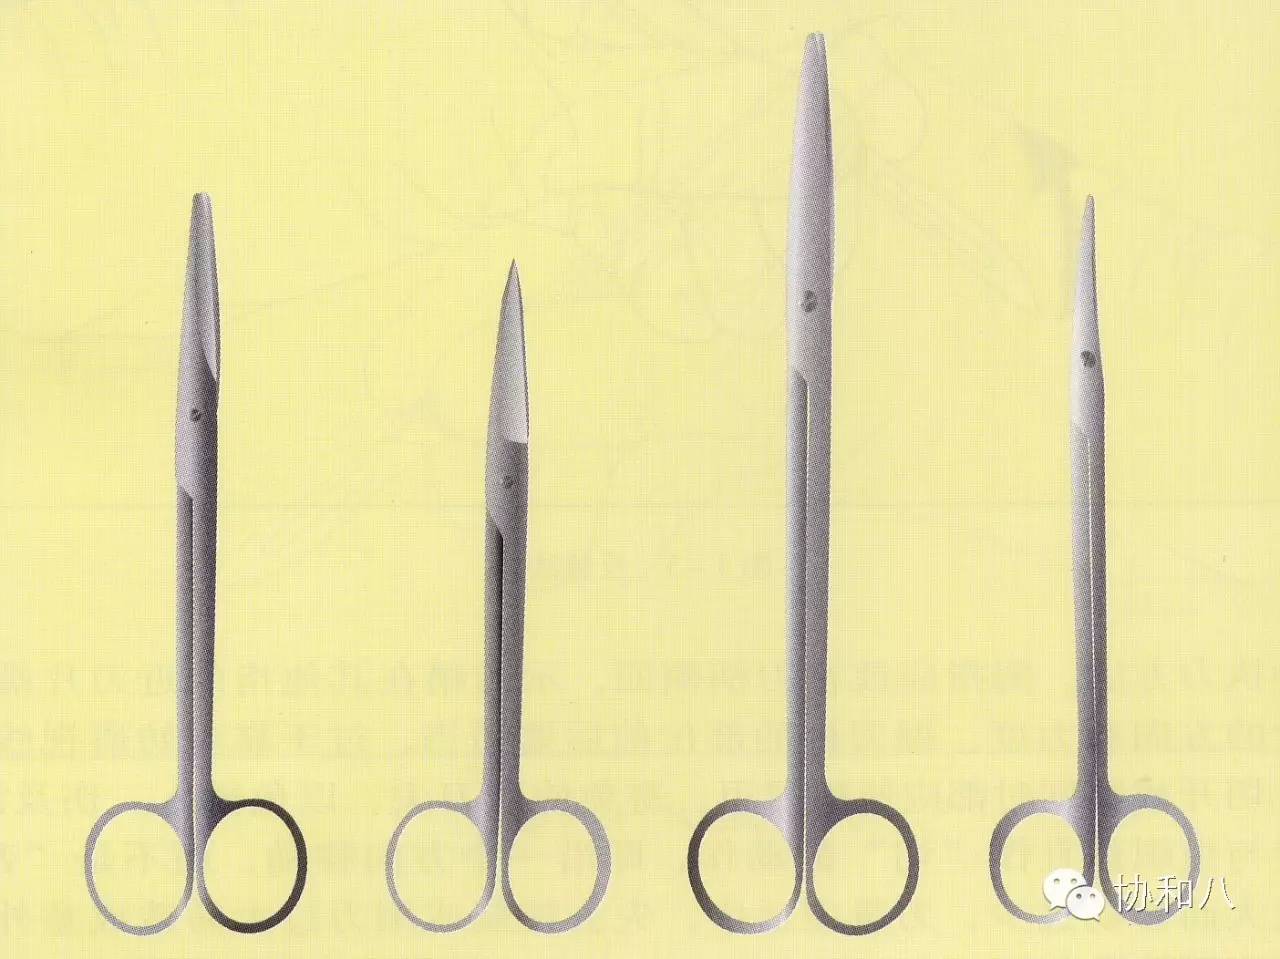 不同类型的剪刀第七种武器——手再先进的器械也是冰冷的,手术室的